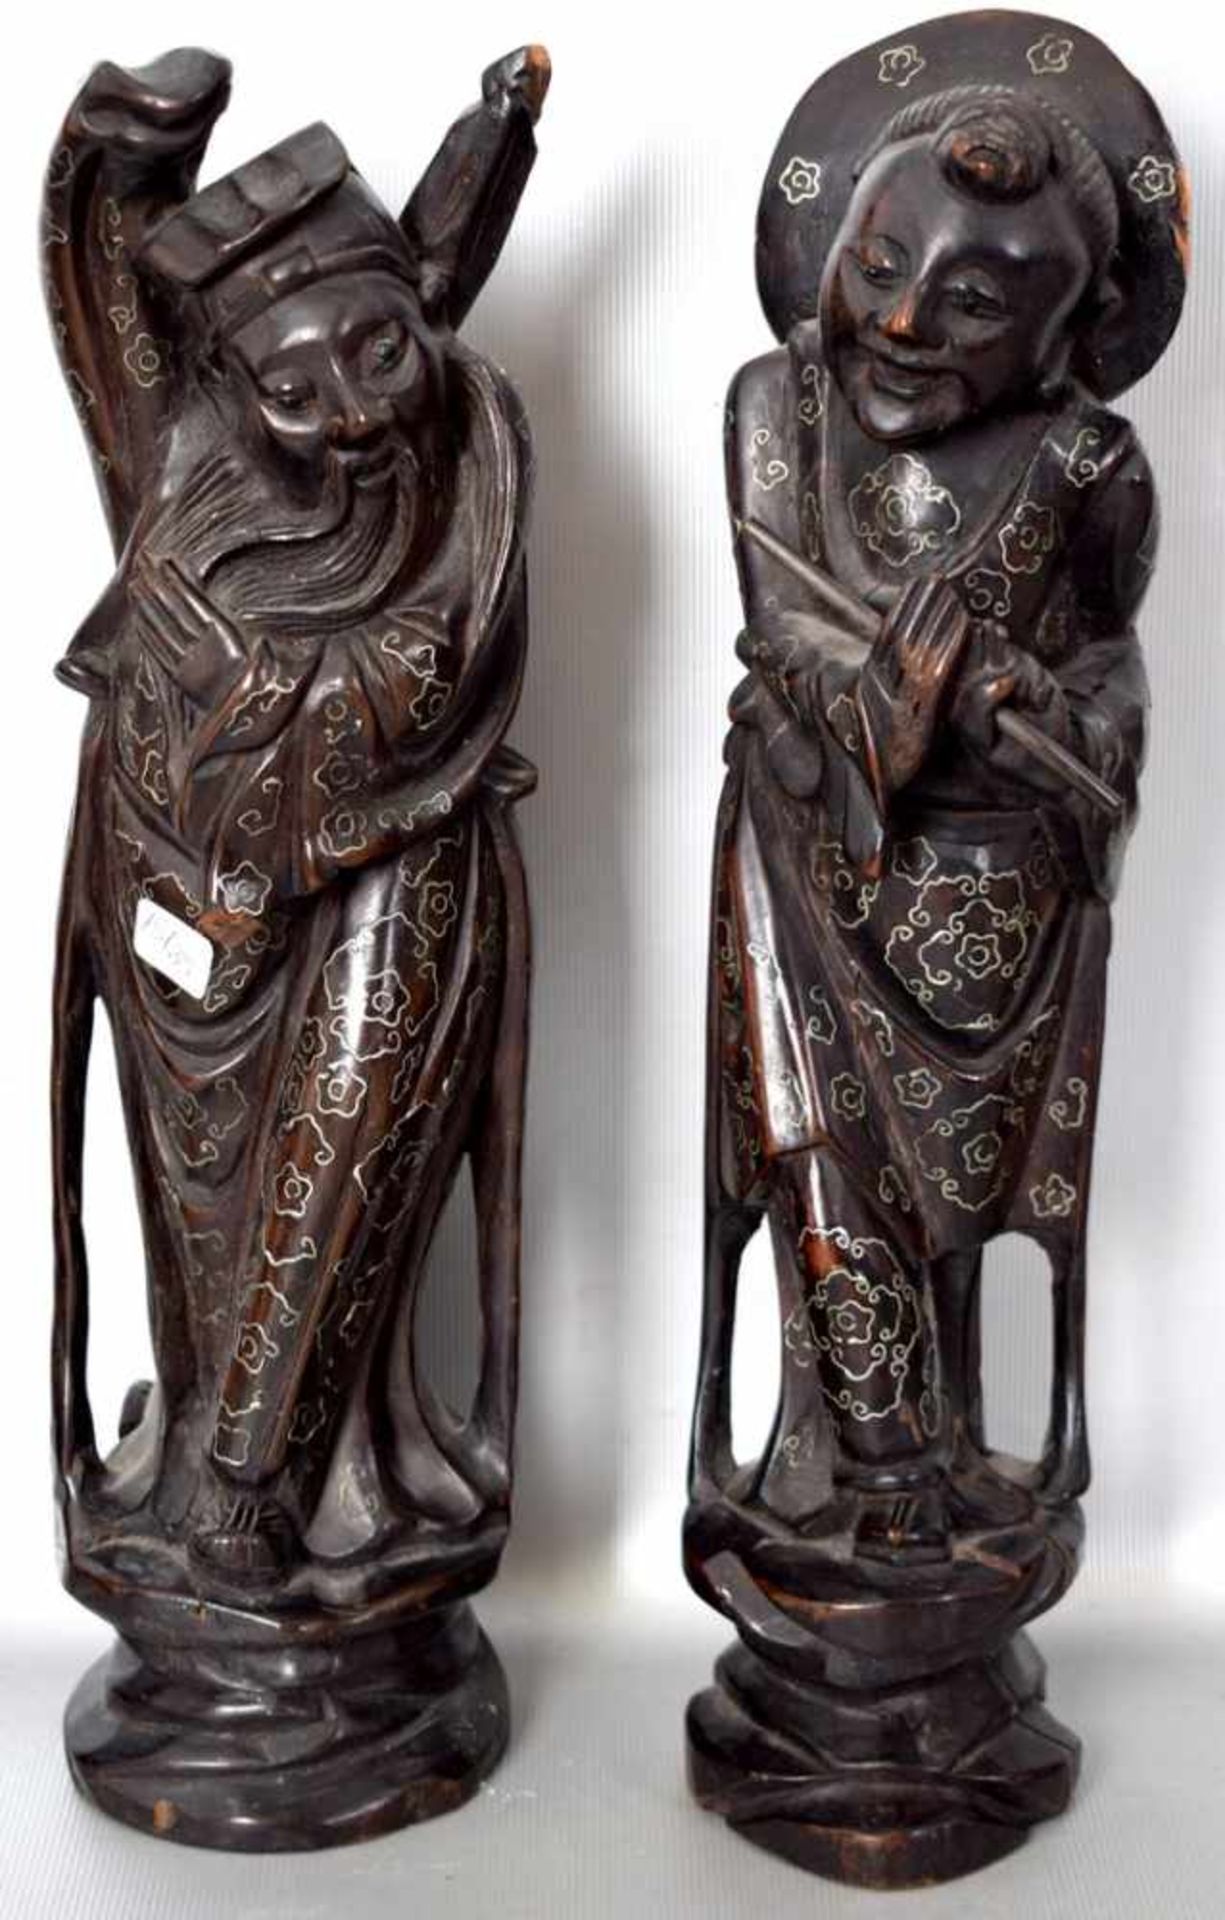 Zwei asiatische Skulpturen Hartholz, geschnitzt, auf Sockel stehend, Mönch bzw. Flötenspieler, mit